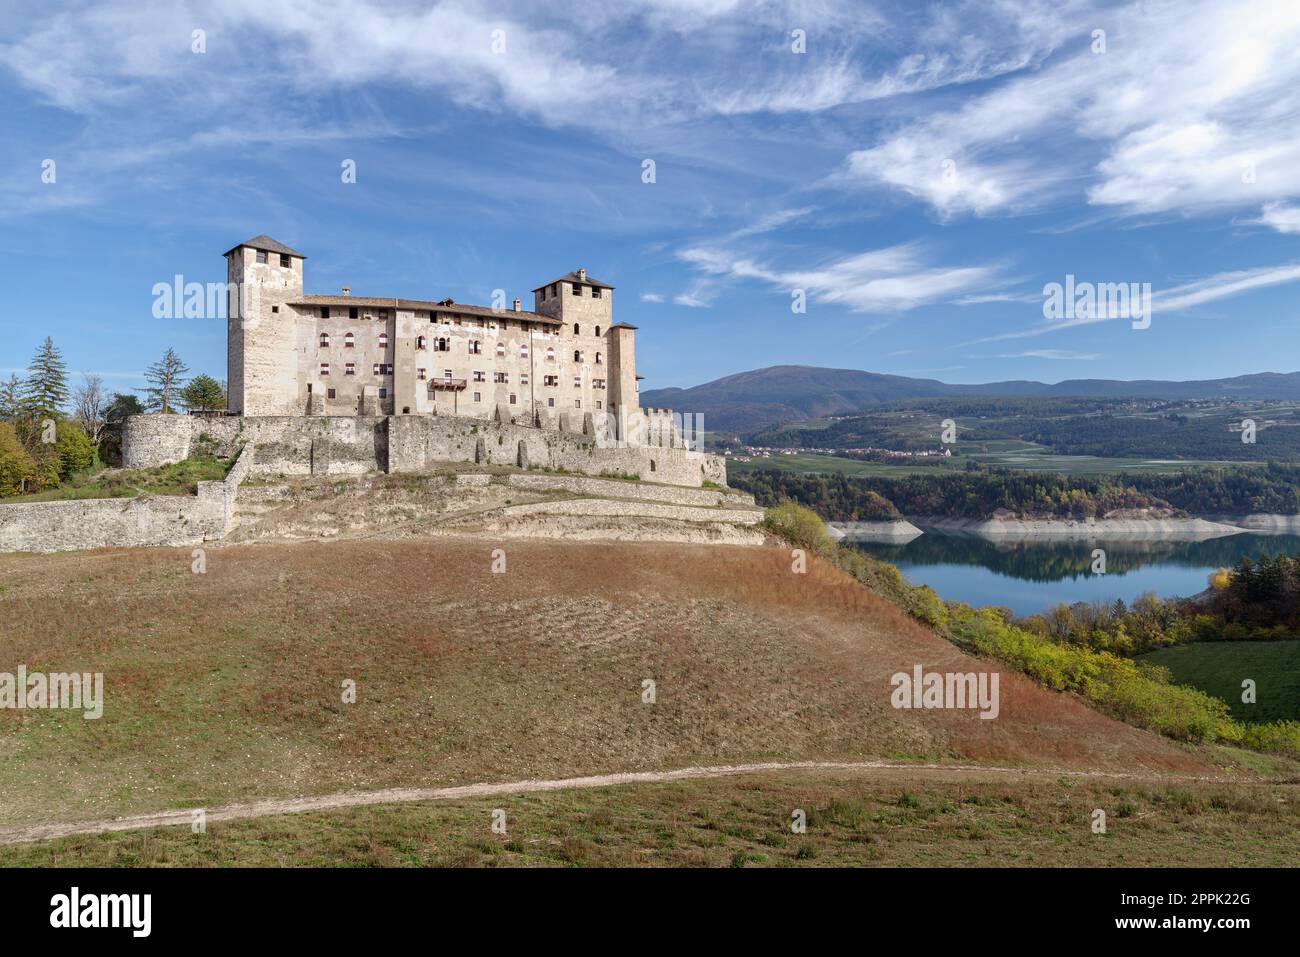 Castello di Cles sulle rive del lago di Santa Giustina, Val di non, Trentino, Italia Foto Stock